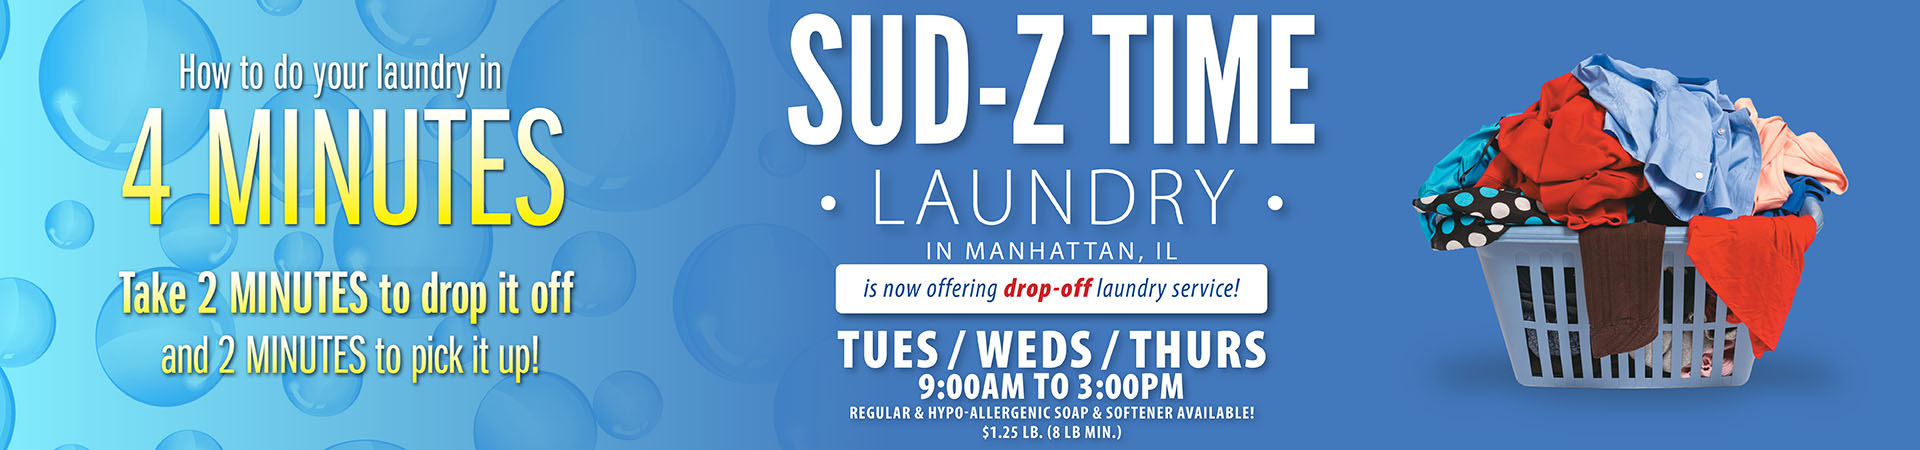 Sub-Z Time Laundry 022499 LP